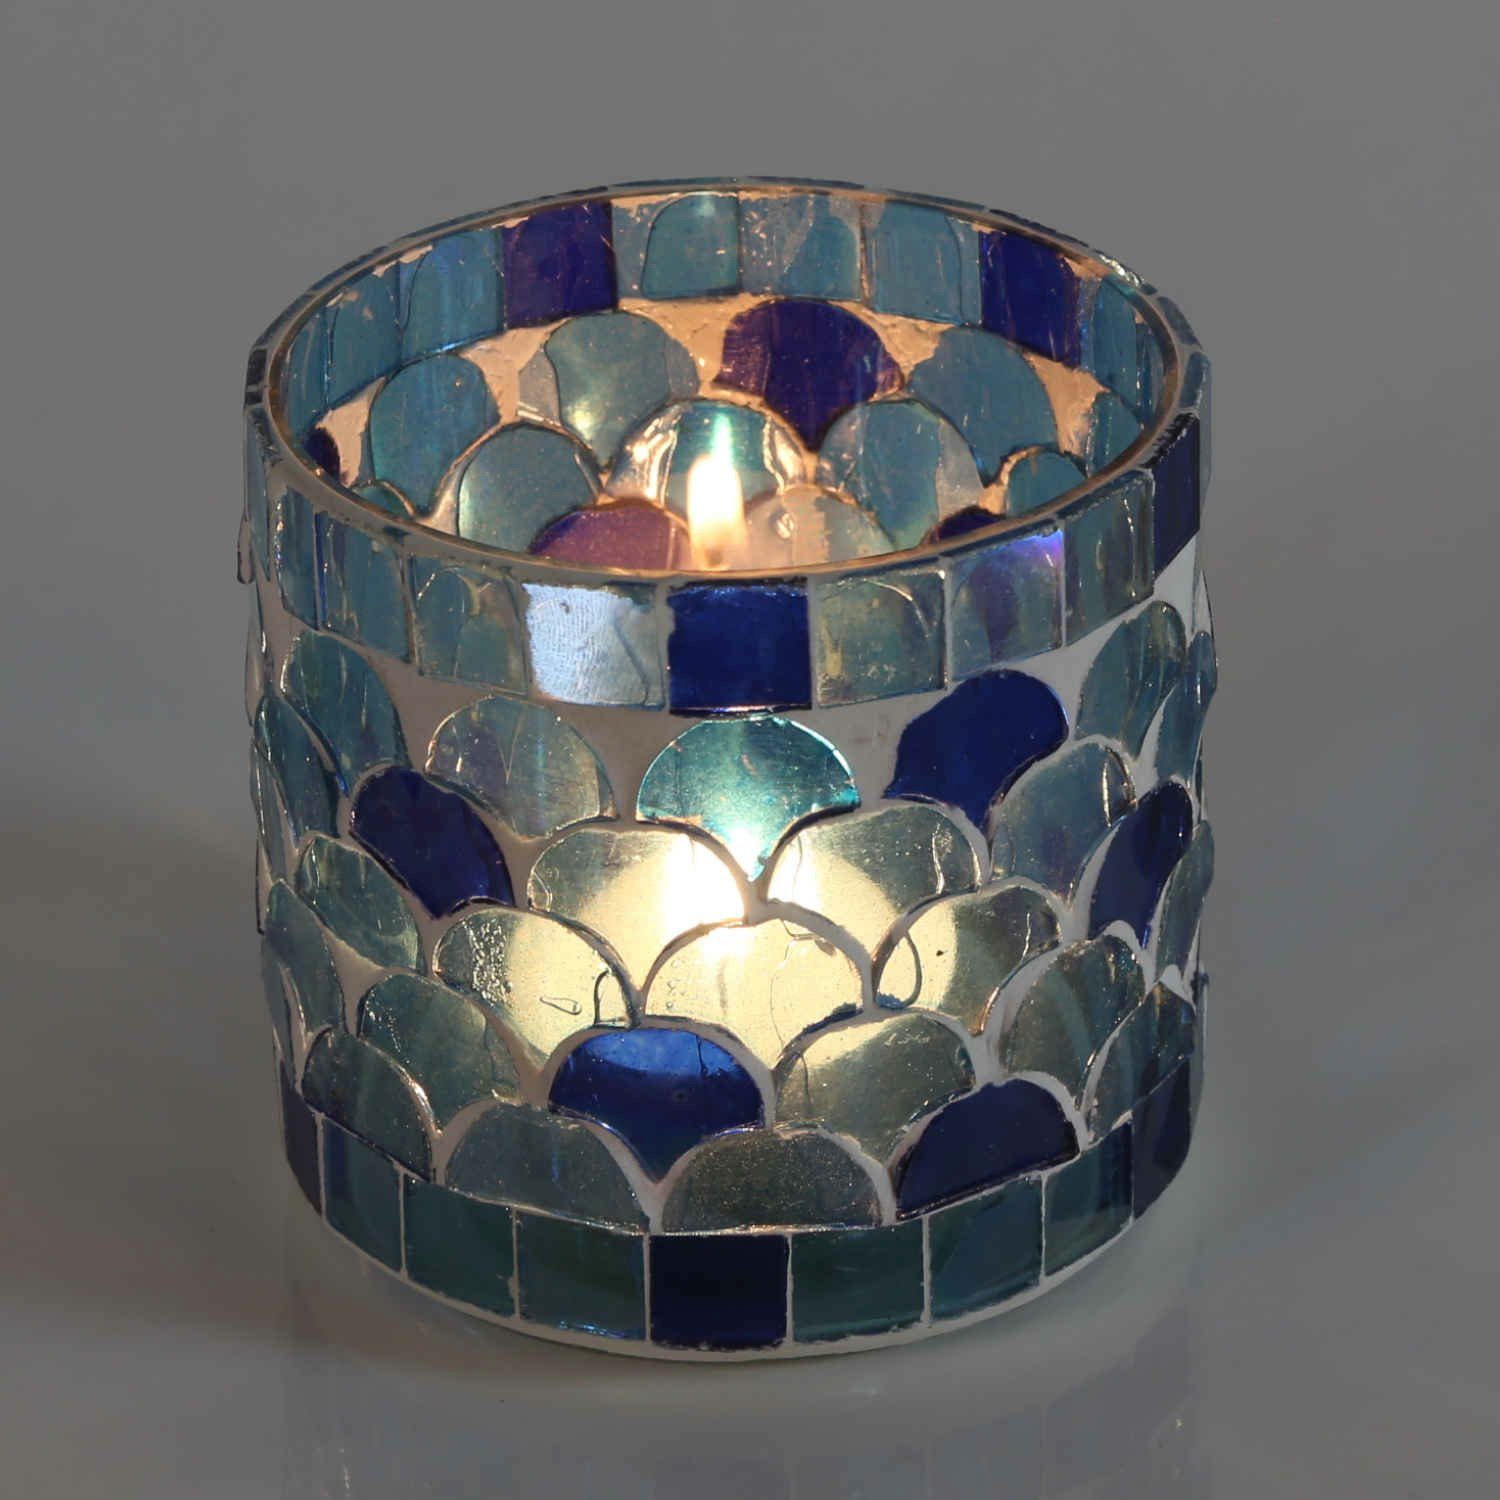 Casa Moro Windlicht Orientalisches Mosaik Kunsthandwerk für S Kerzenhalter, schöner Kerzenständer in oder Größen Teelichthalter bestellbar), Chic Athen M Windlicht (Boho Dunkelblau Glas Glaswindlicht den pur 2er als und handgefertigt Set wohnen einfach